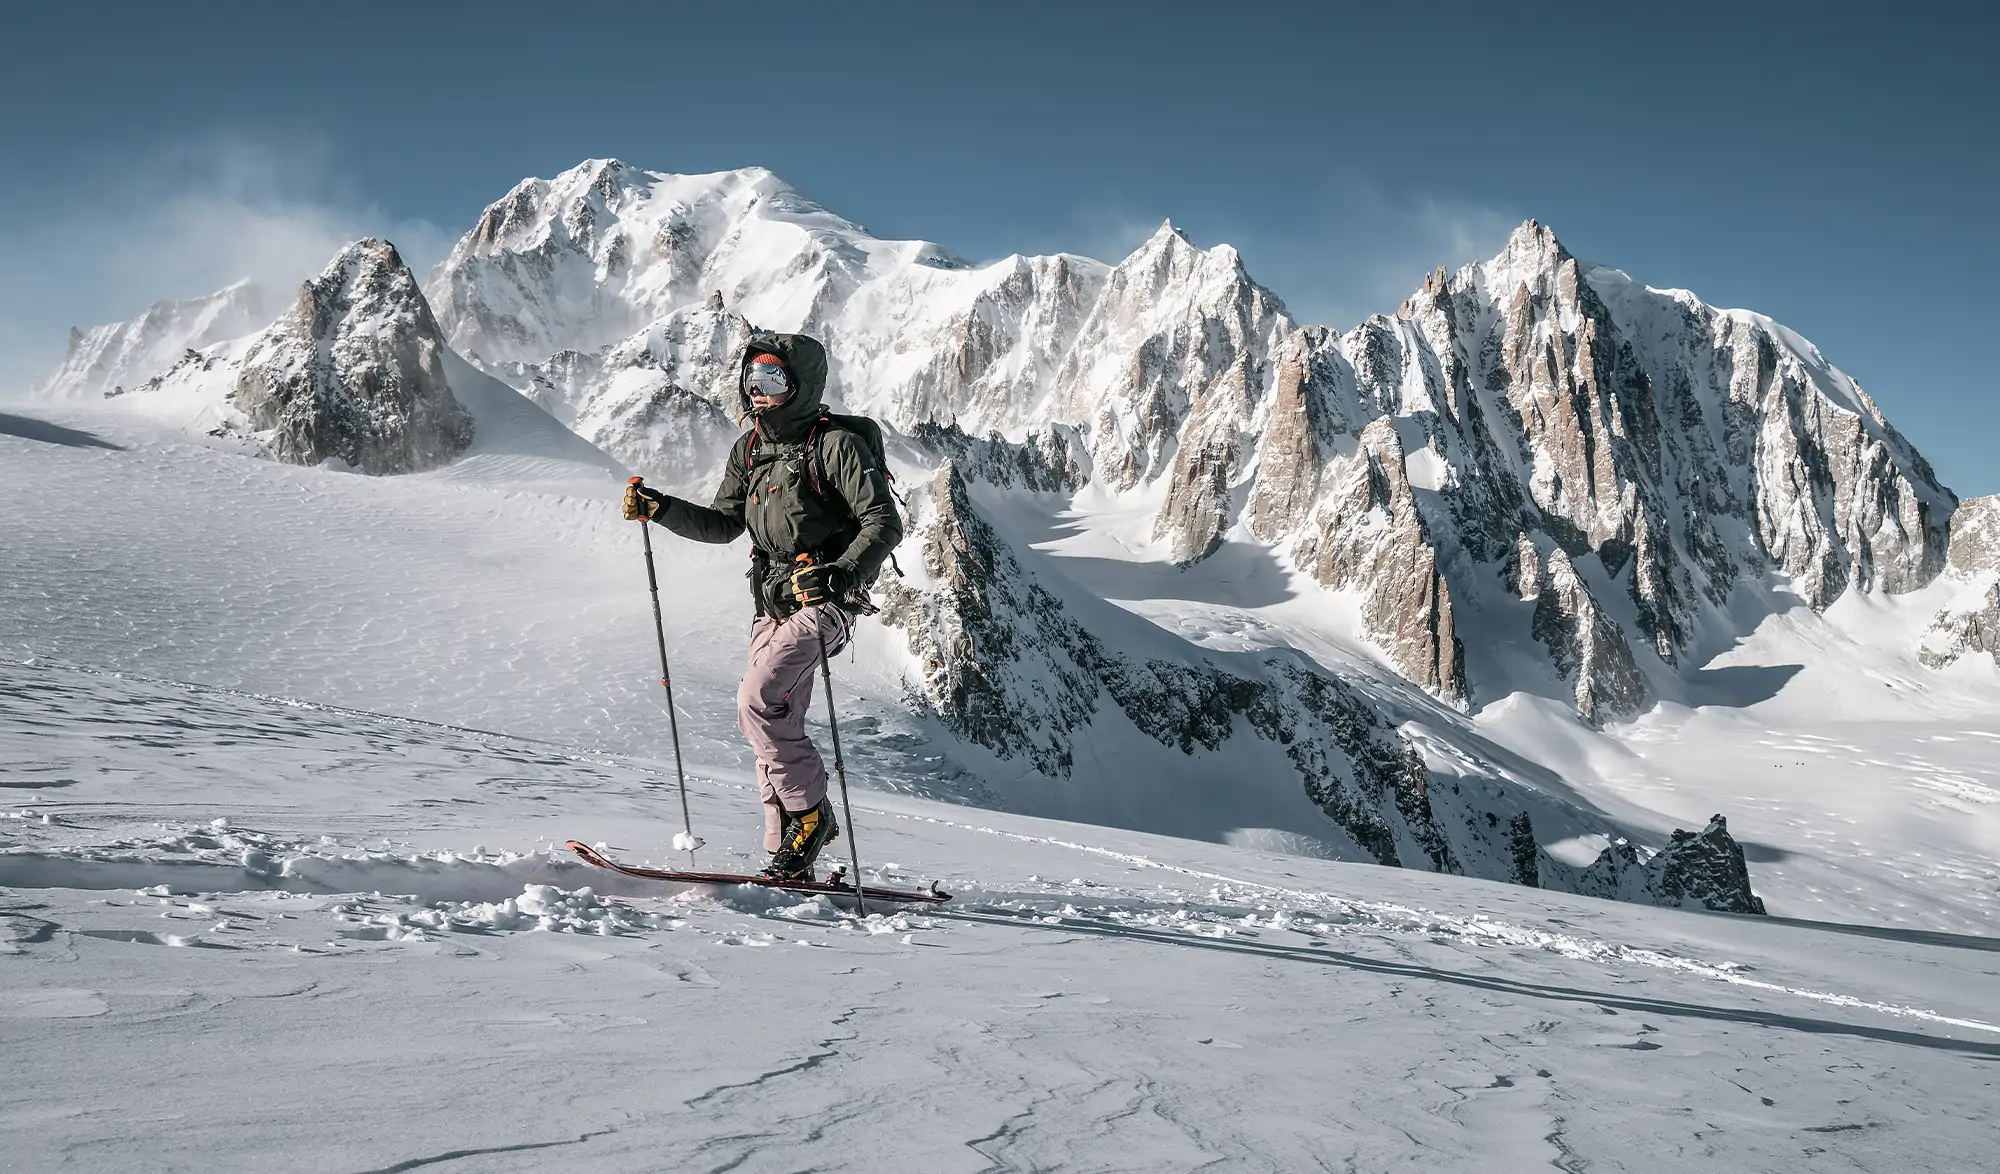 Lunettes de ski 101 – Blogue La Cordée: plein air, vélo et ski